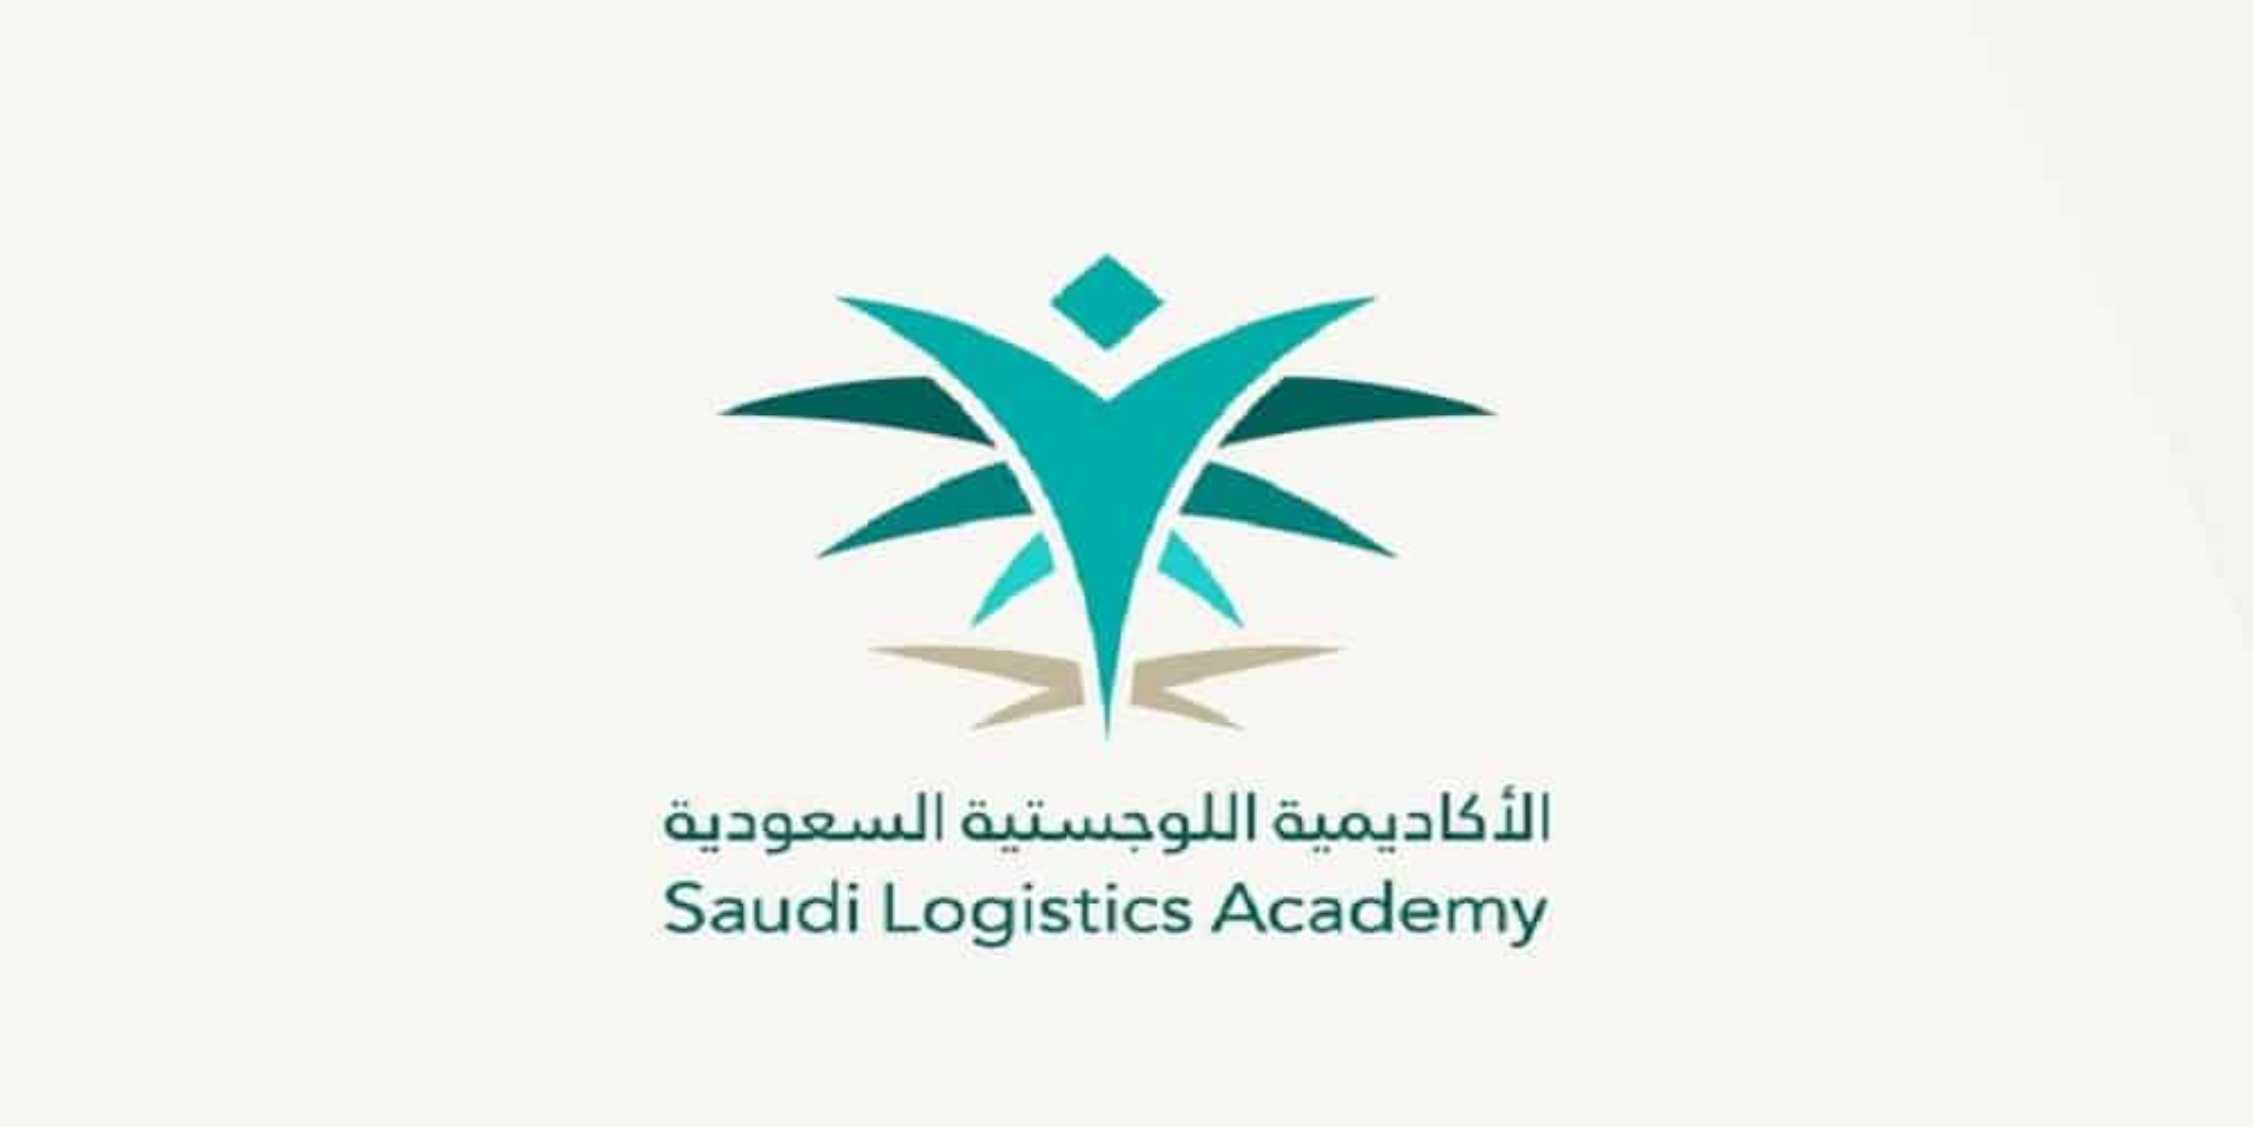 الأكاديمية السعودية اللوجستية تعلن فتح باب التسجيل للدفعة التاسعة لبرنامج الدبلوم المبتدئ بالتوظيف